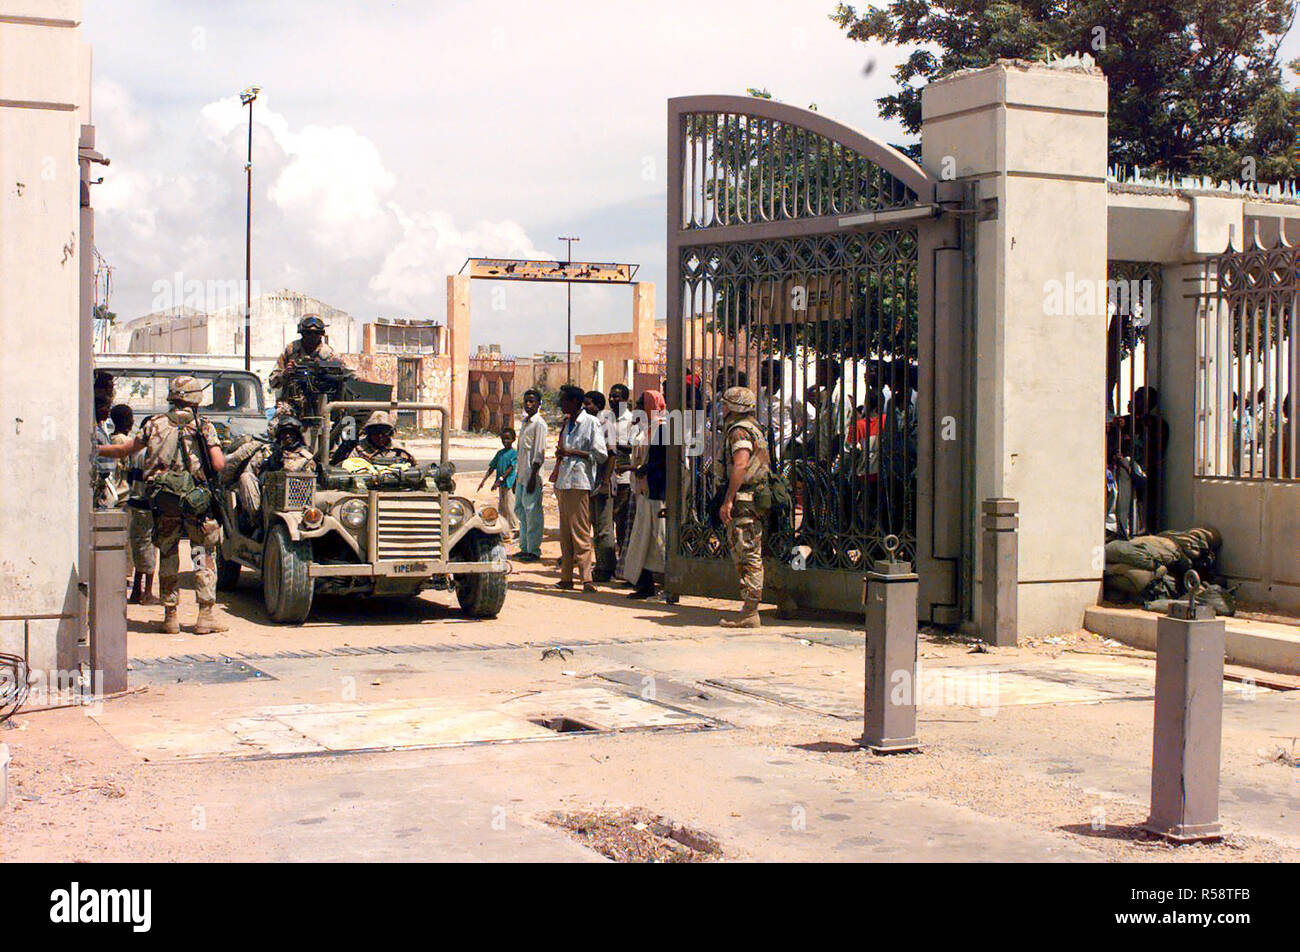 1992 - US Marines entrar la puerta principal en el recinto de la embajada en Mogadishu, Somalia Foto de stock